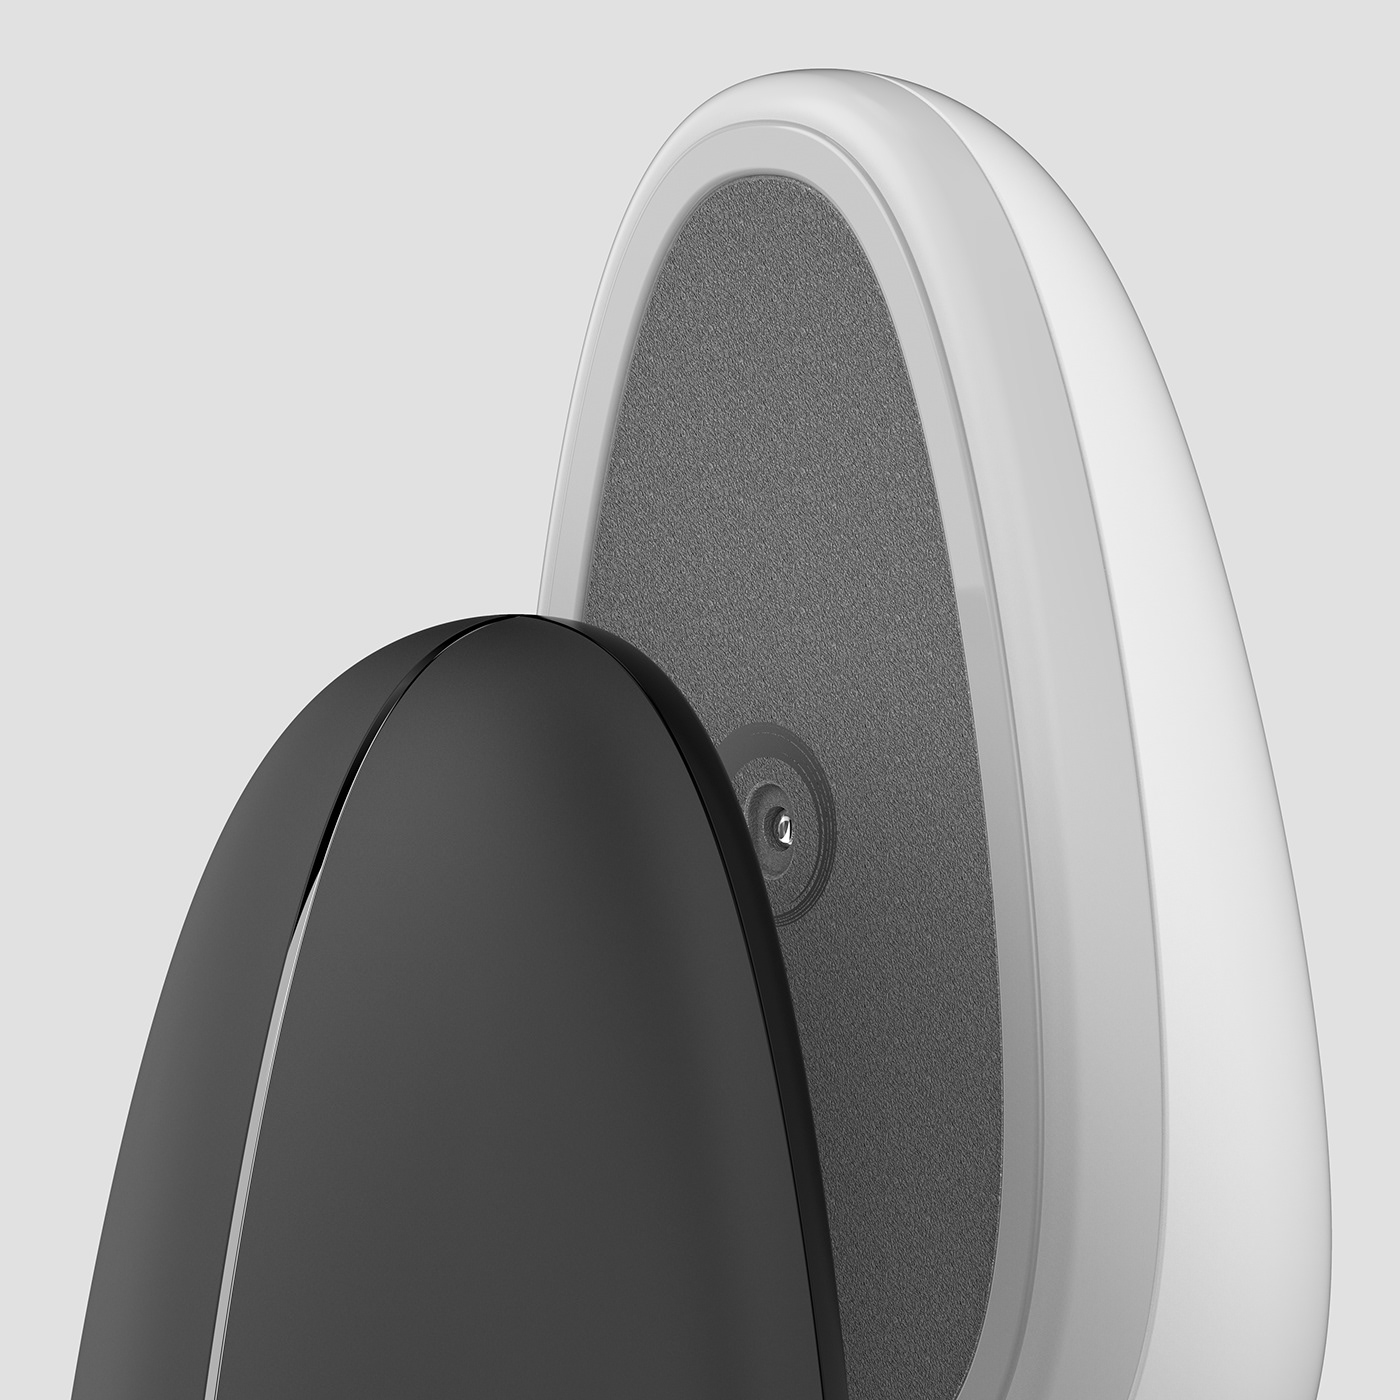 concept concept design details industrial design  minimal monochrome mouse product product design  zen stones